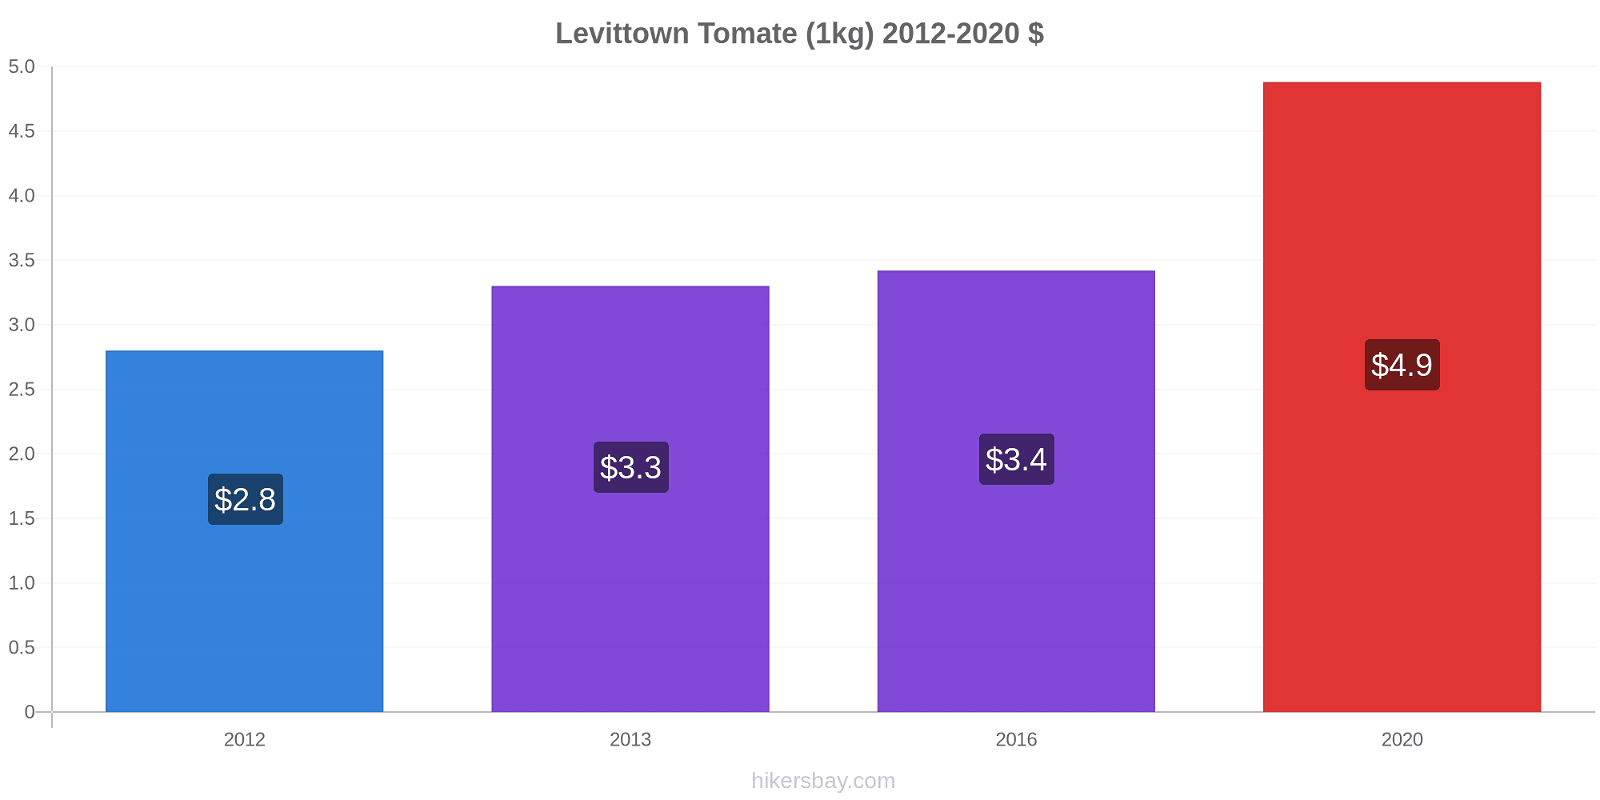 Levittown Preisänderungen Tomaten (1kg) hikersbay.com